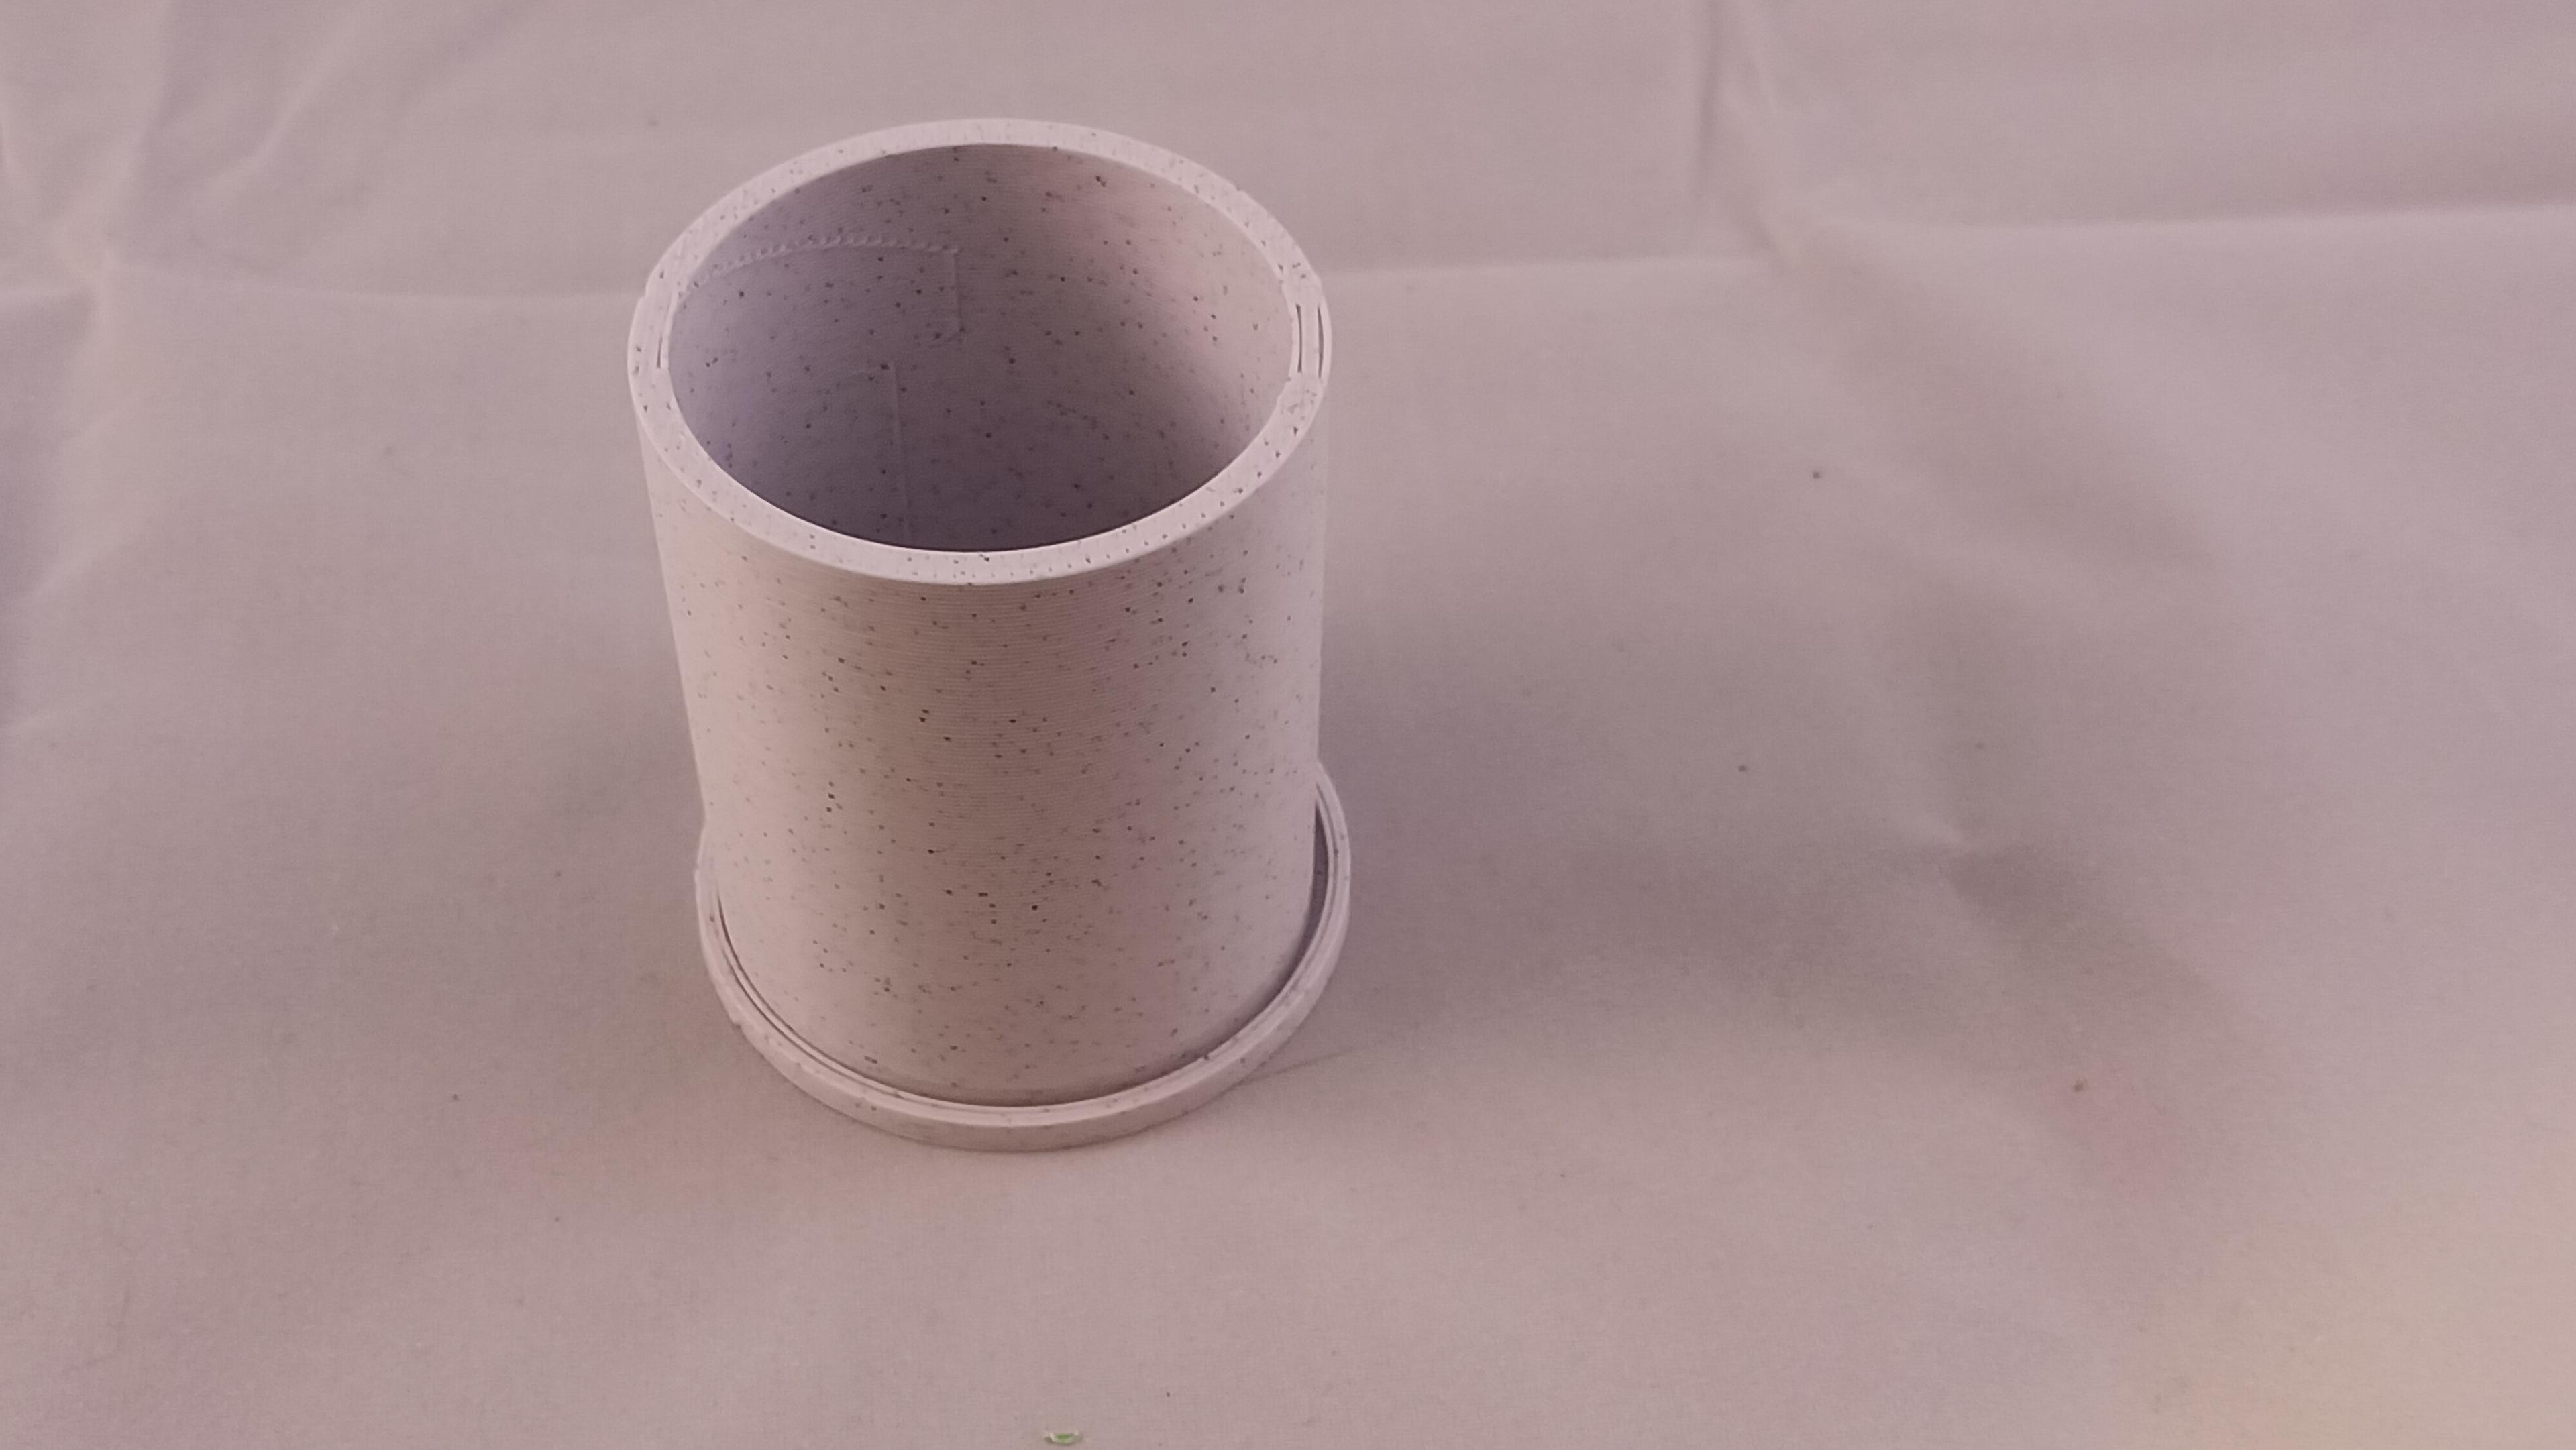 Cylinder Succulent pots or desk organizer 3d model